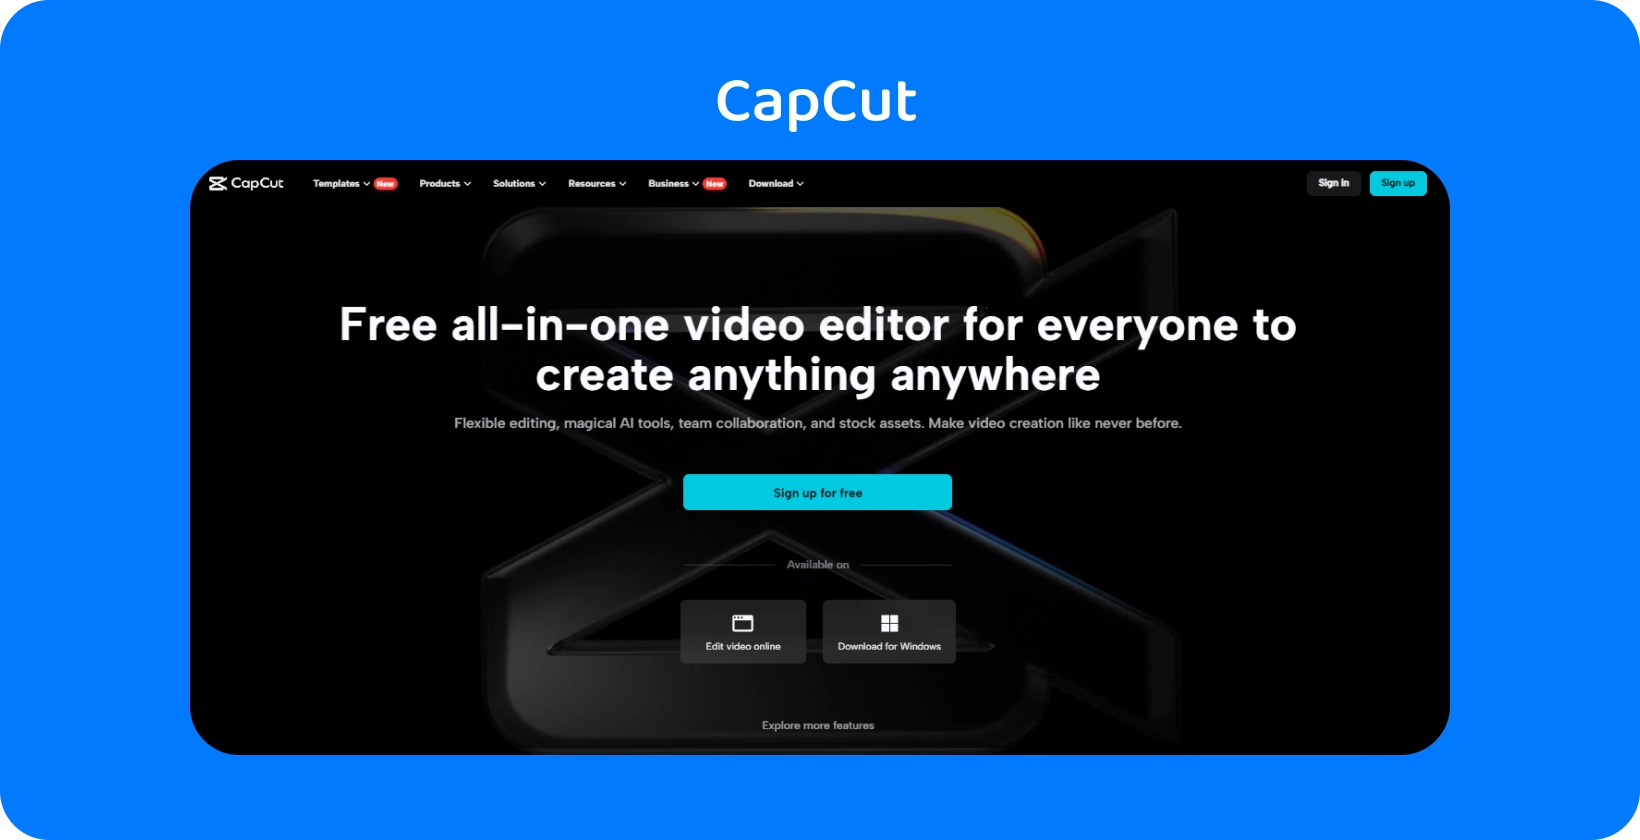 CapCut pagrindiniame puslapyje demonstruojama nemokama "viskas viename" vaizdo įrašų rengyklė, skirta kurti turinį bet kuriame įrenginyje, tamsaus ir aptakaus dizaino.
